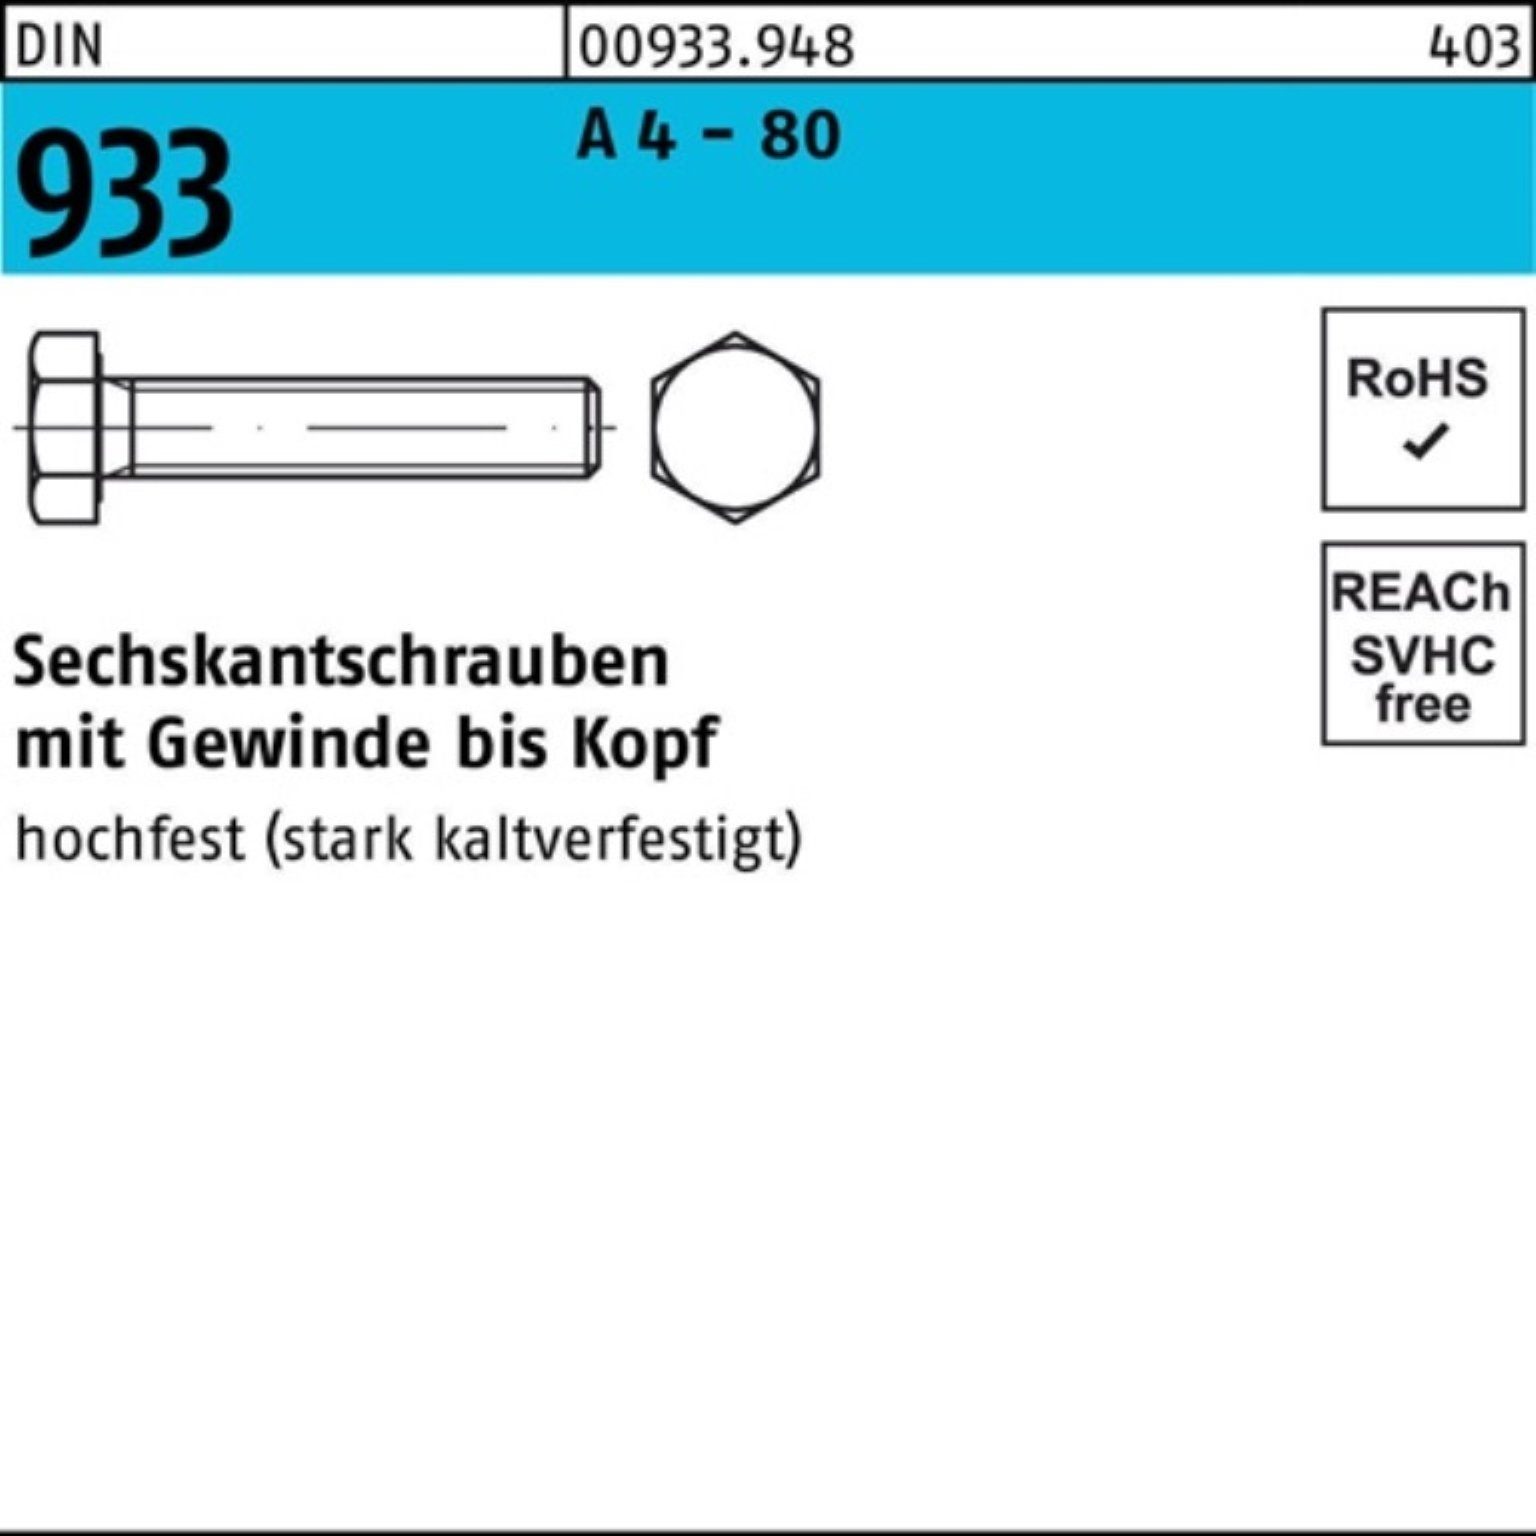 Reyher Sechskantschraube 100er Pack Sechskantschraube DIN 933 VG M12x 35 A 4 - 80 100 Stück DI